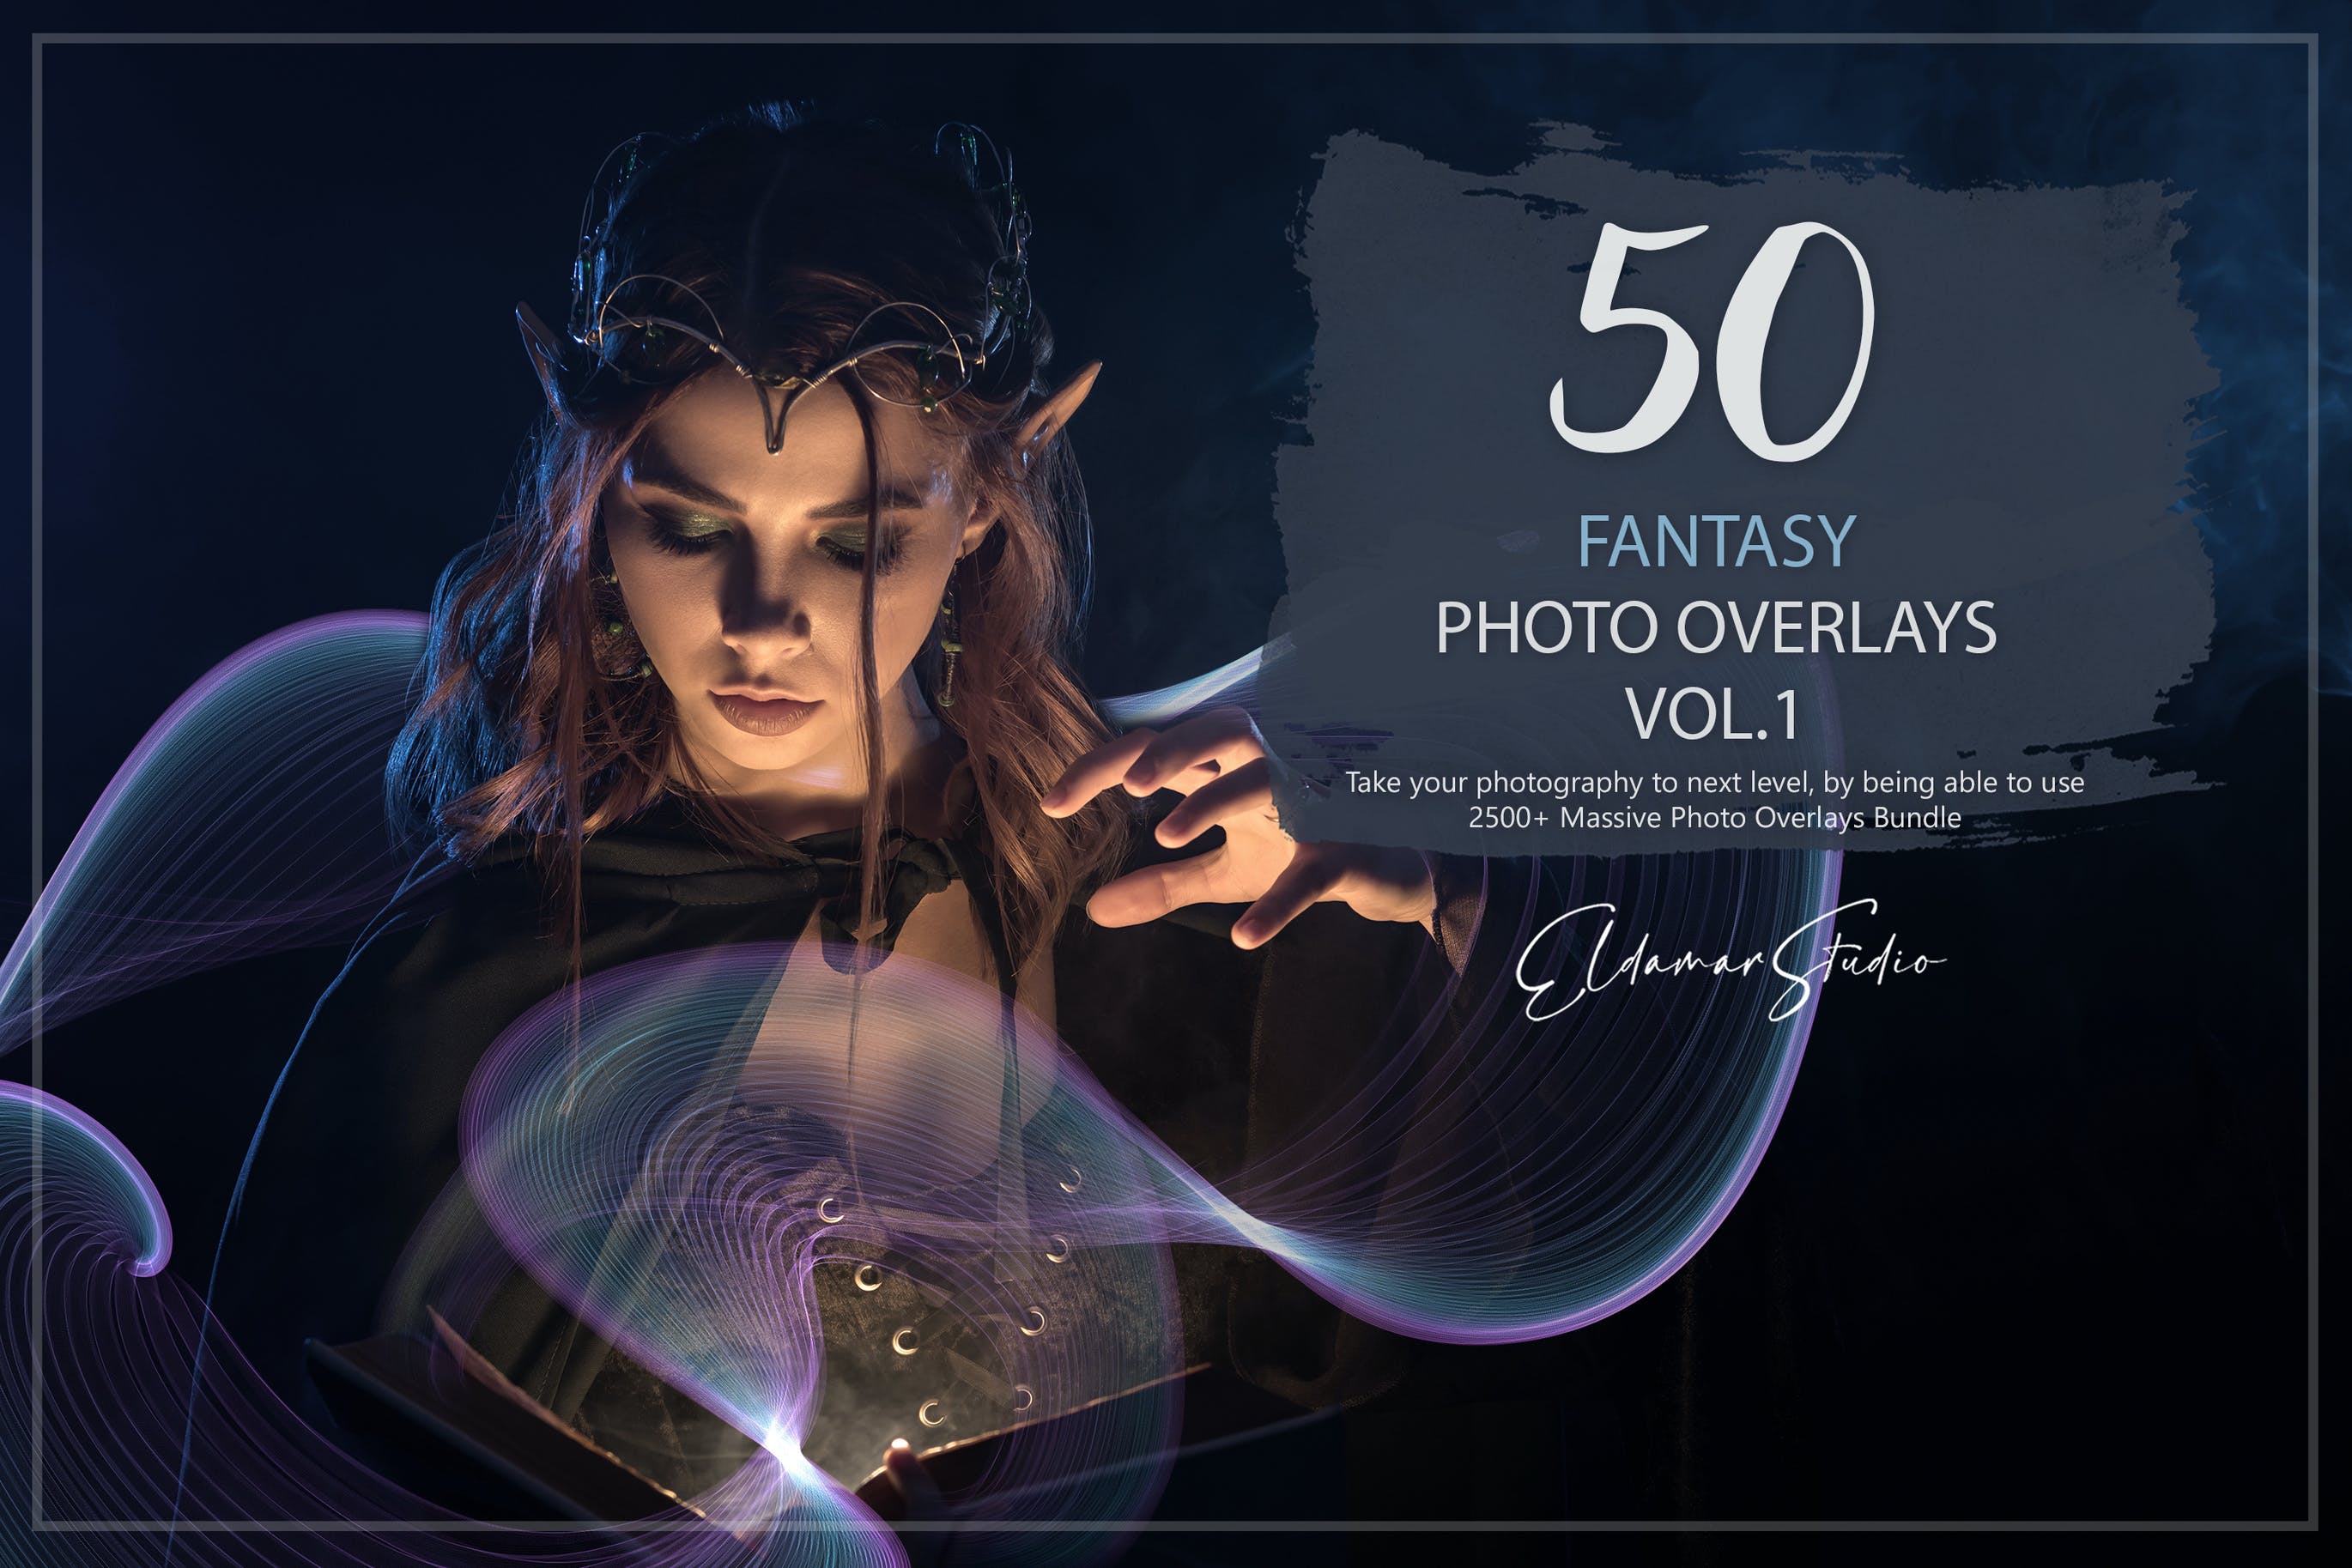 50个梦幻彩色几何线条照片叠层背景素材v1 50 Fantasy Photo Overlays – Vol. 1 图片素材 第1张